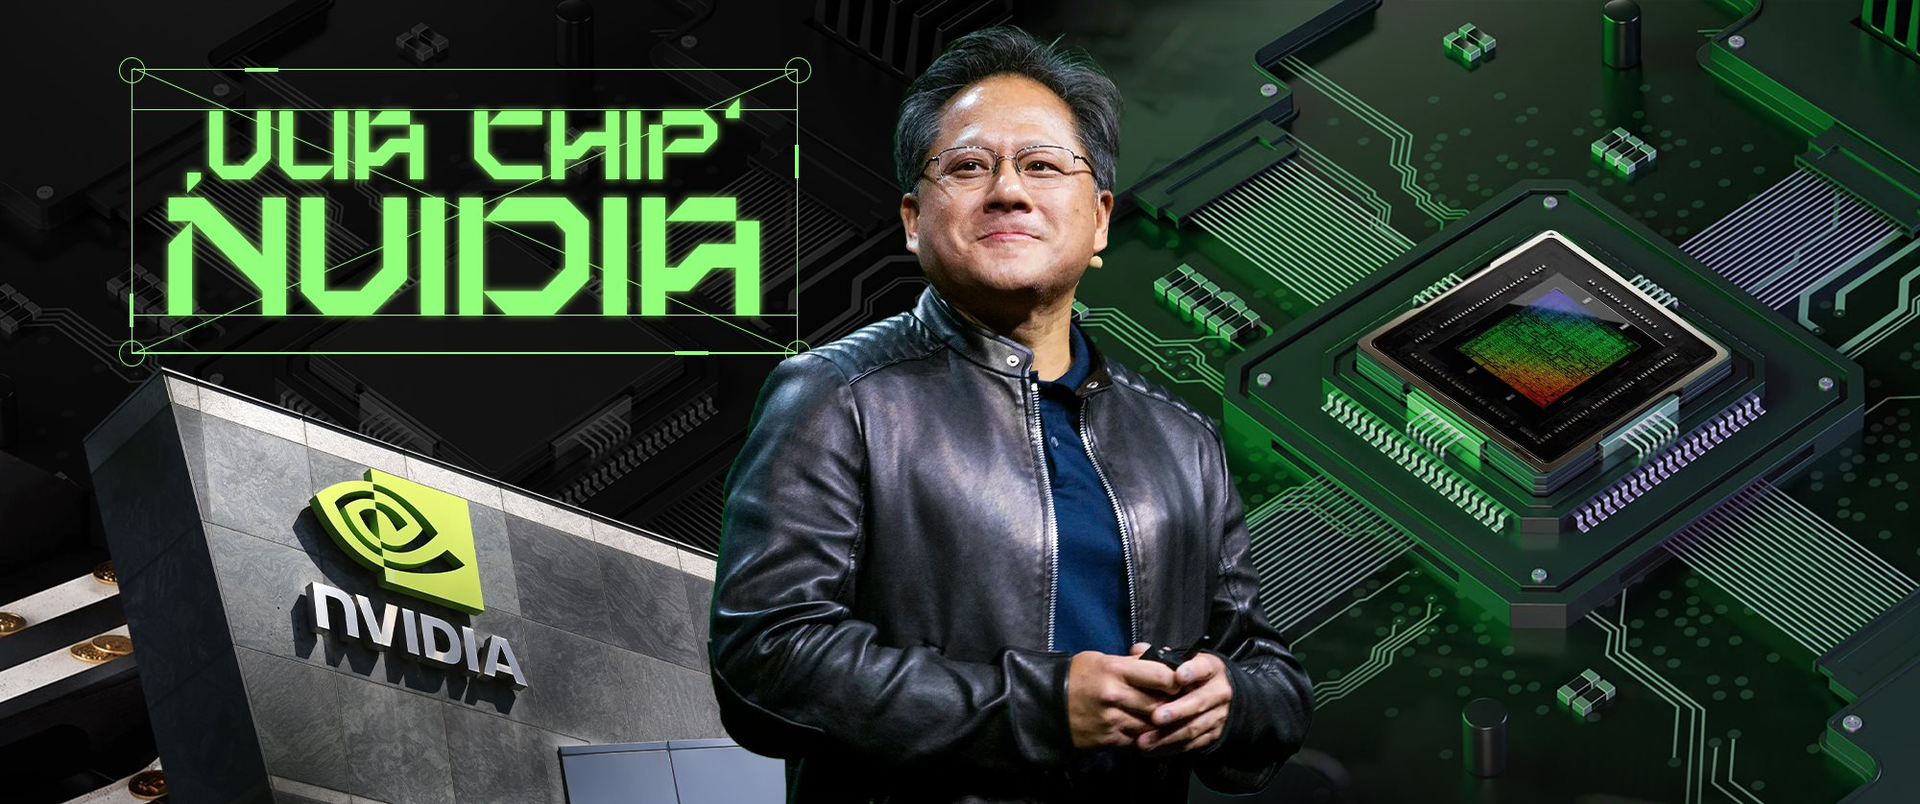 1.000 tỷ USD: Mức vốn hóa giúp ‘vua chip’ Nvidia ngang hàng Apple, Microsoft, nắm trong tay vị thế độc tôn nhờ 2 ‘át chủ bài’ - Ảnh 2.